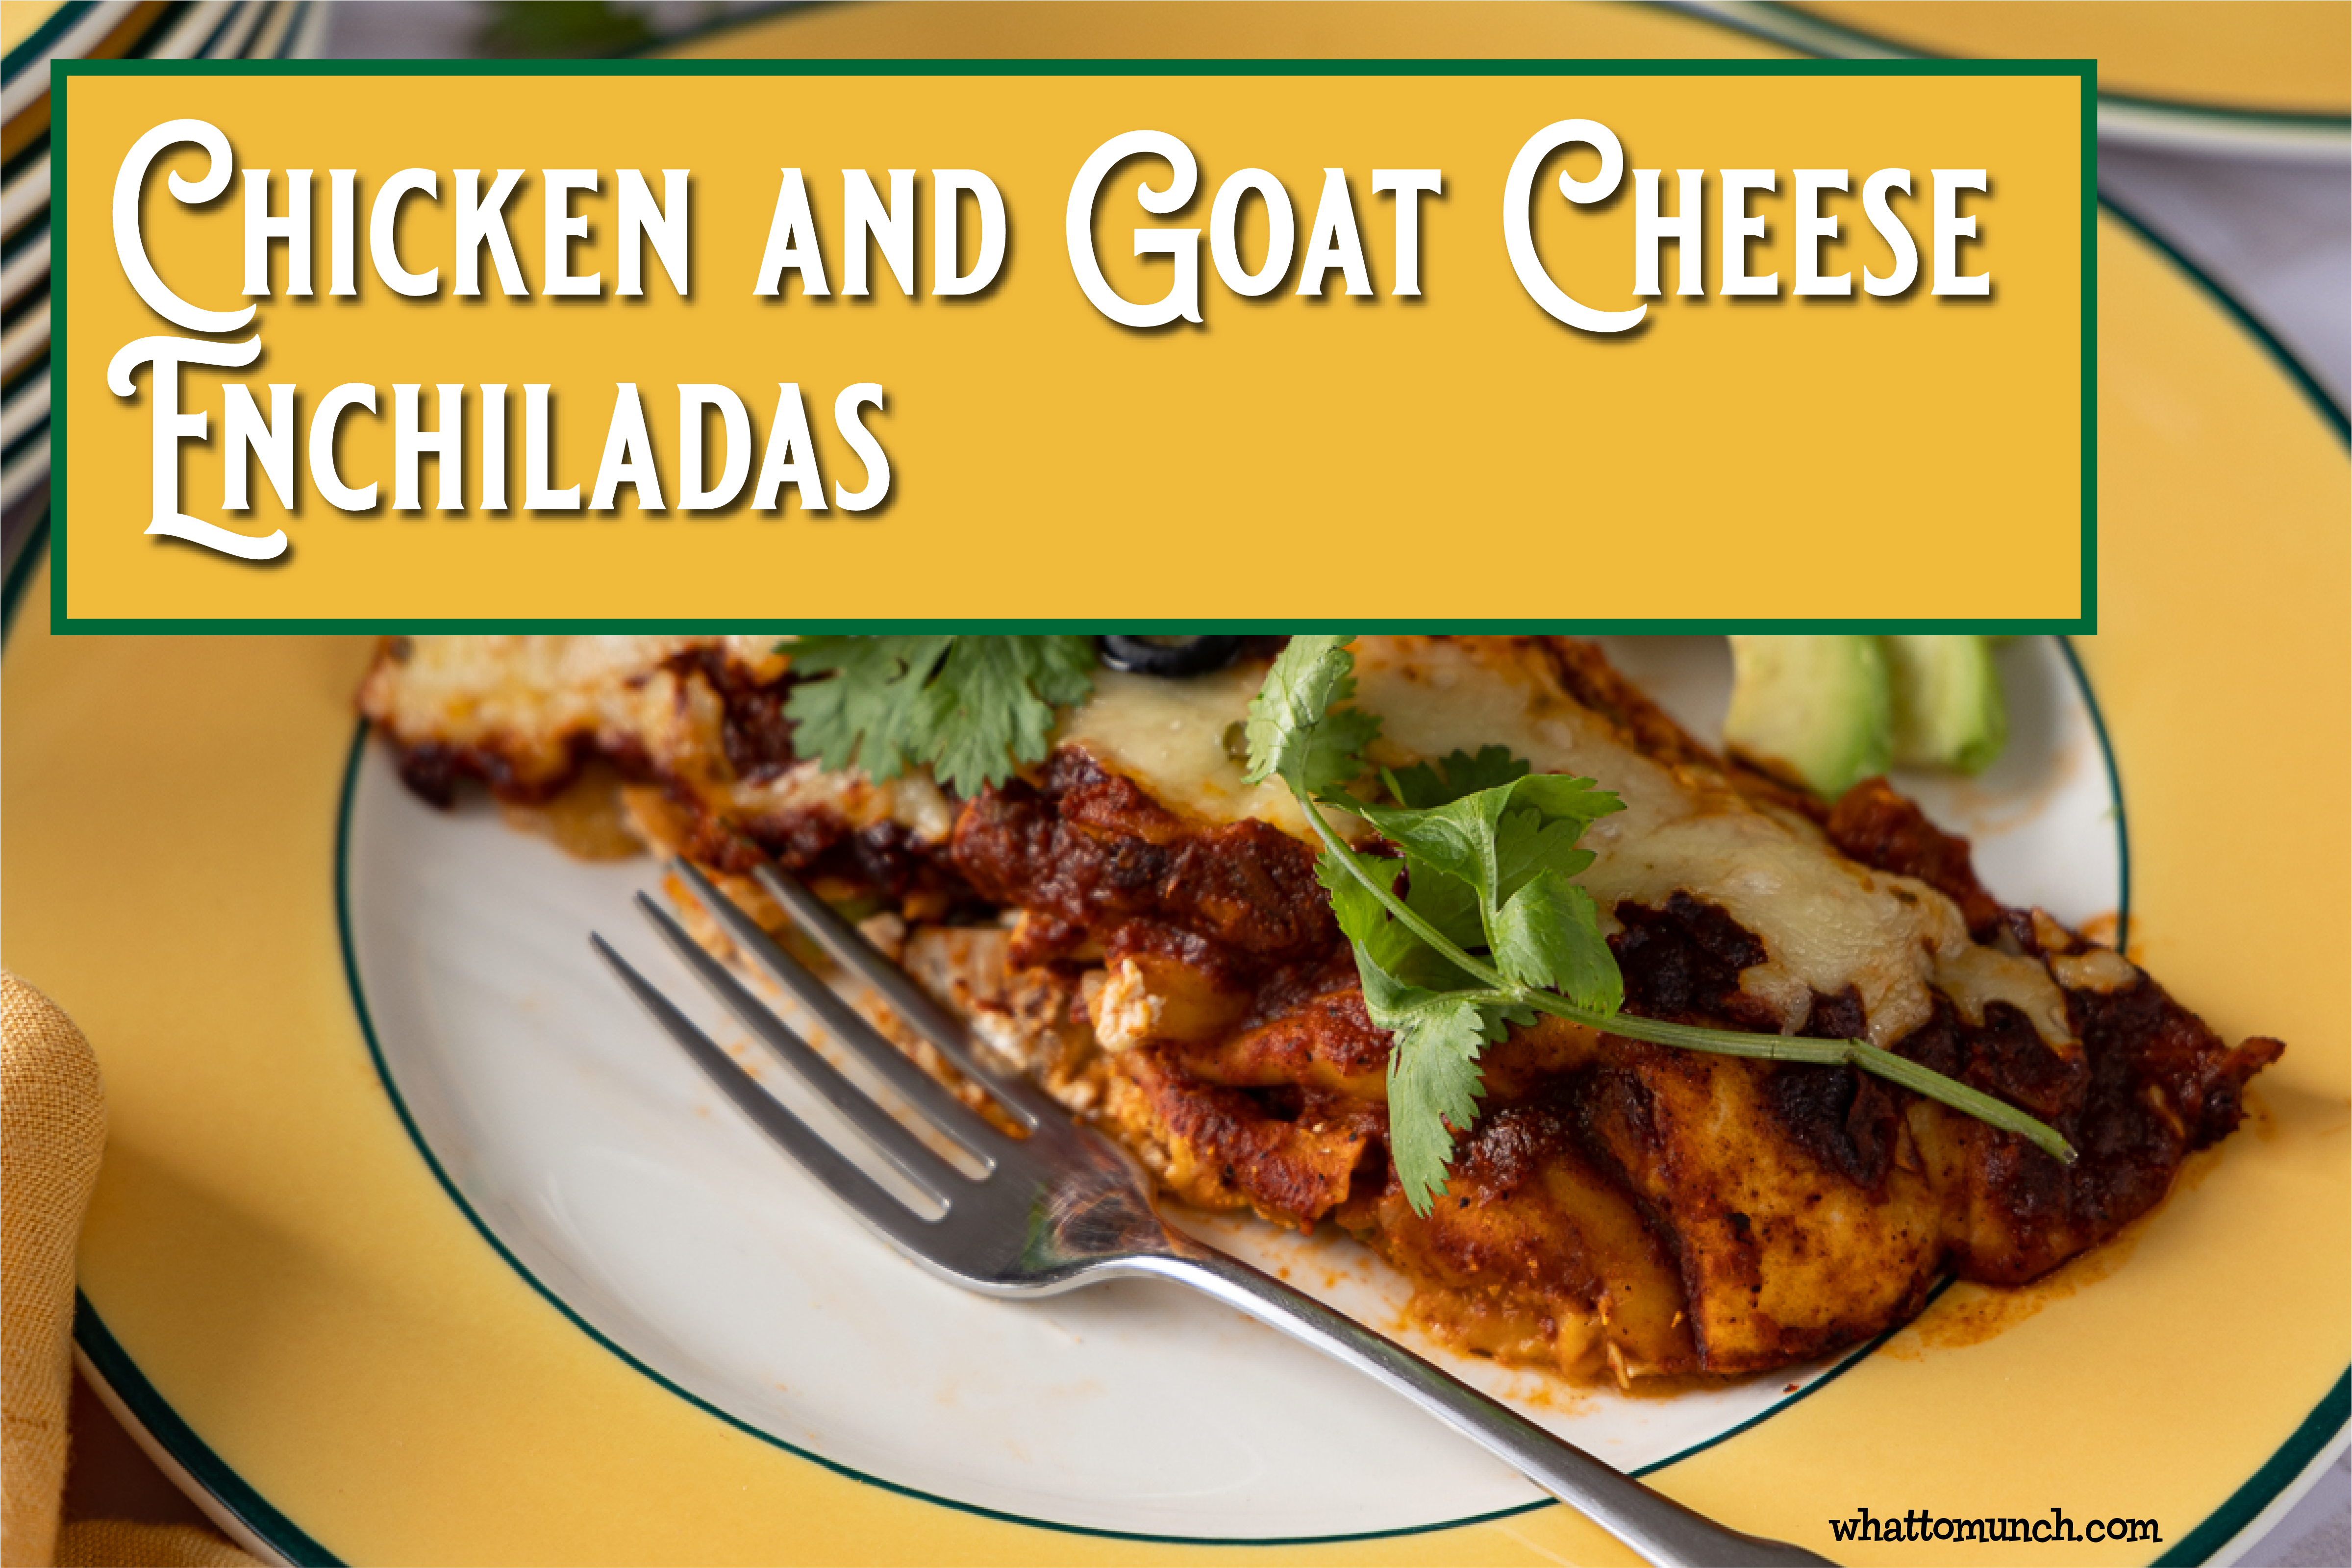 Chicken and Goat Cheese Enchiladas